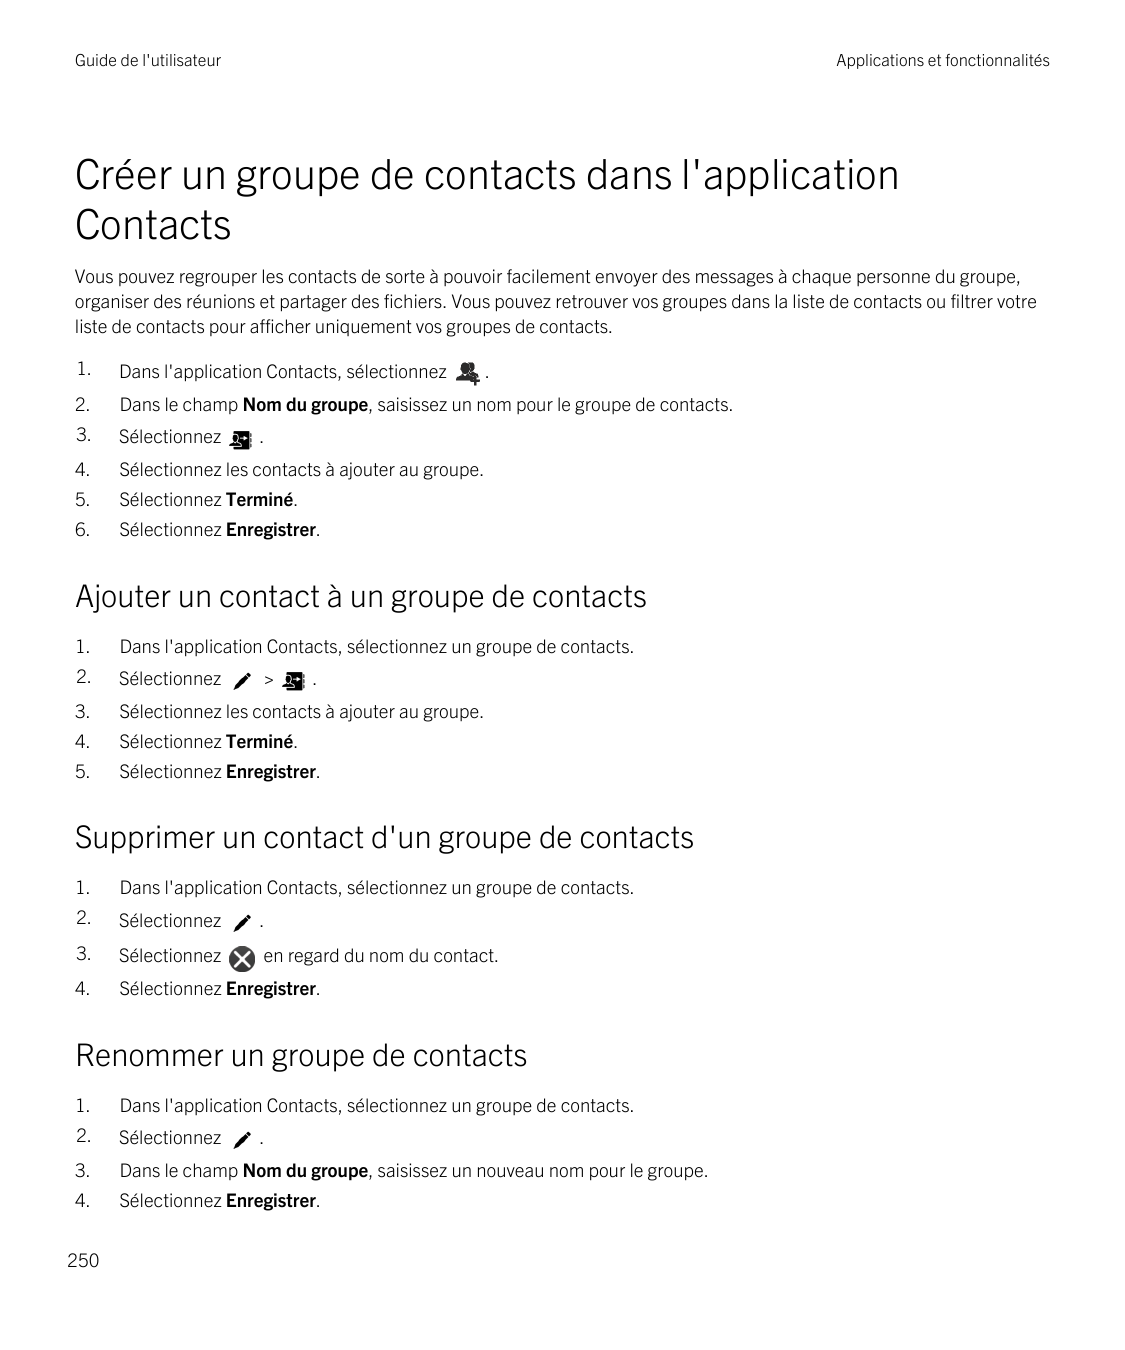 Guide de l'utilisateurApplications et fonctionnalitésCréer un groupe de contacts dans l'applicationContactsVous pouvez regrouper